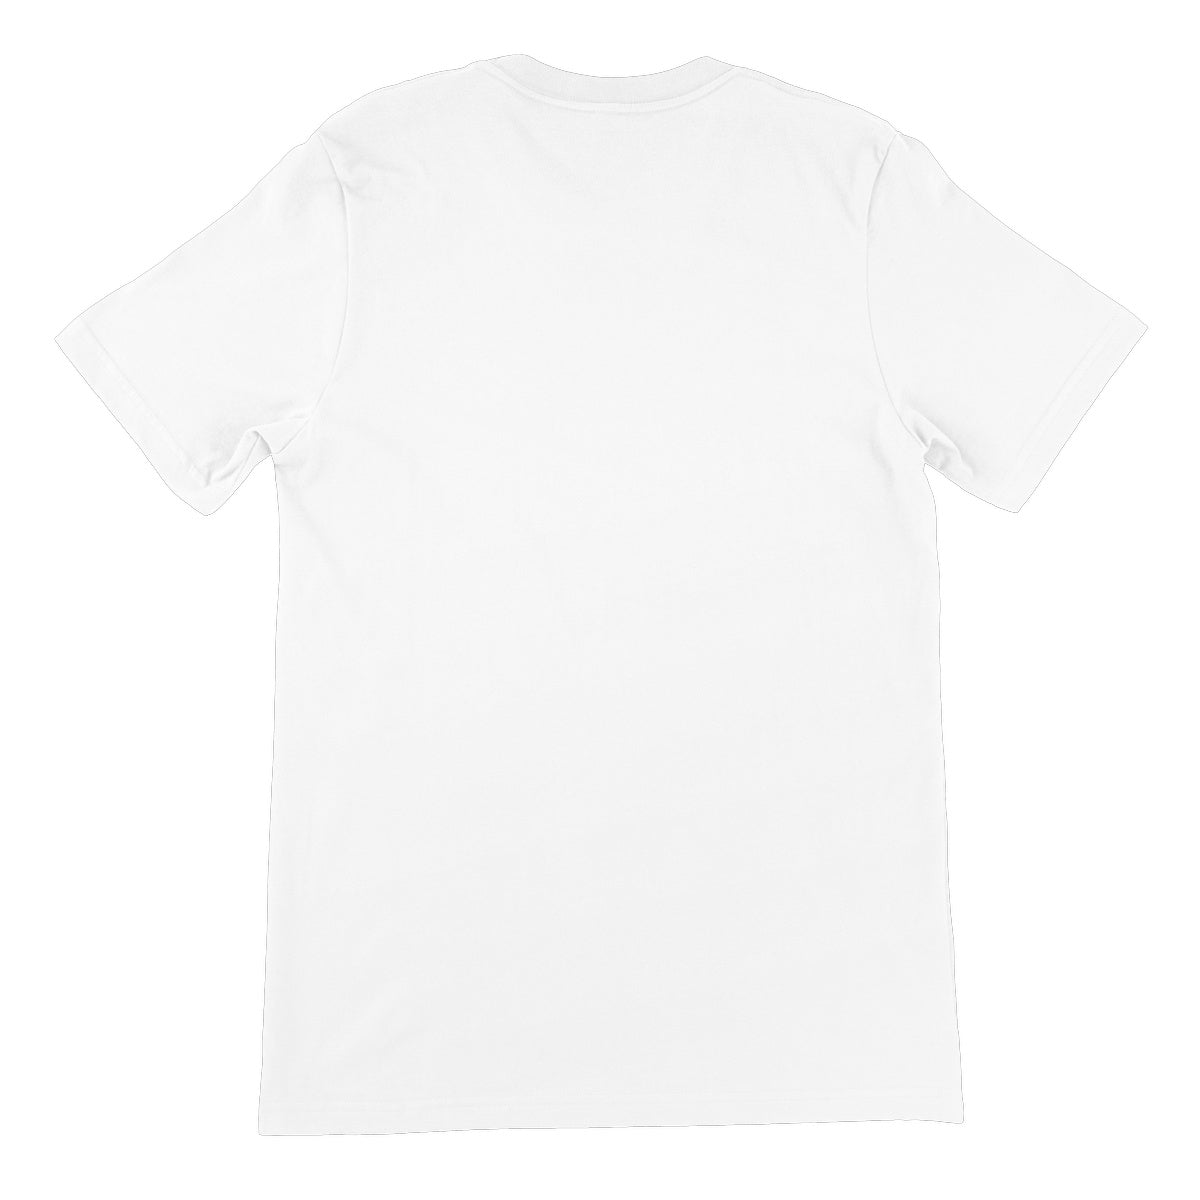 Warrior Wrestling The Diamond White Unisex Short Sleeve T-Shirt